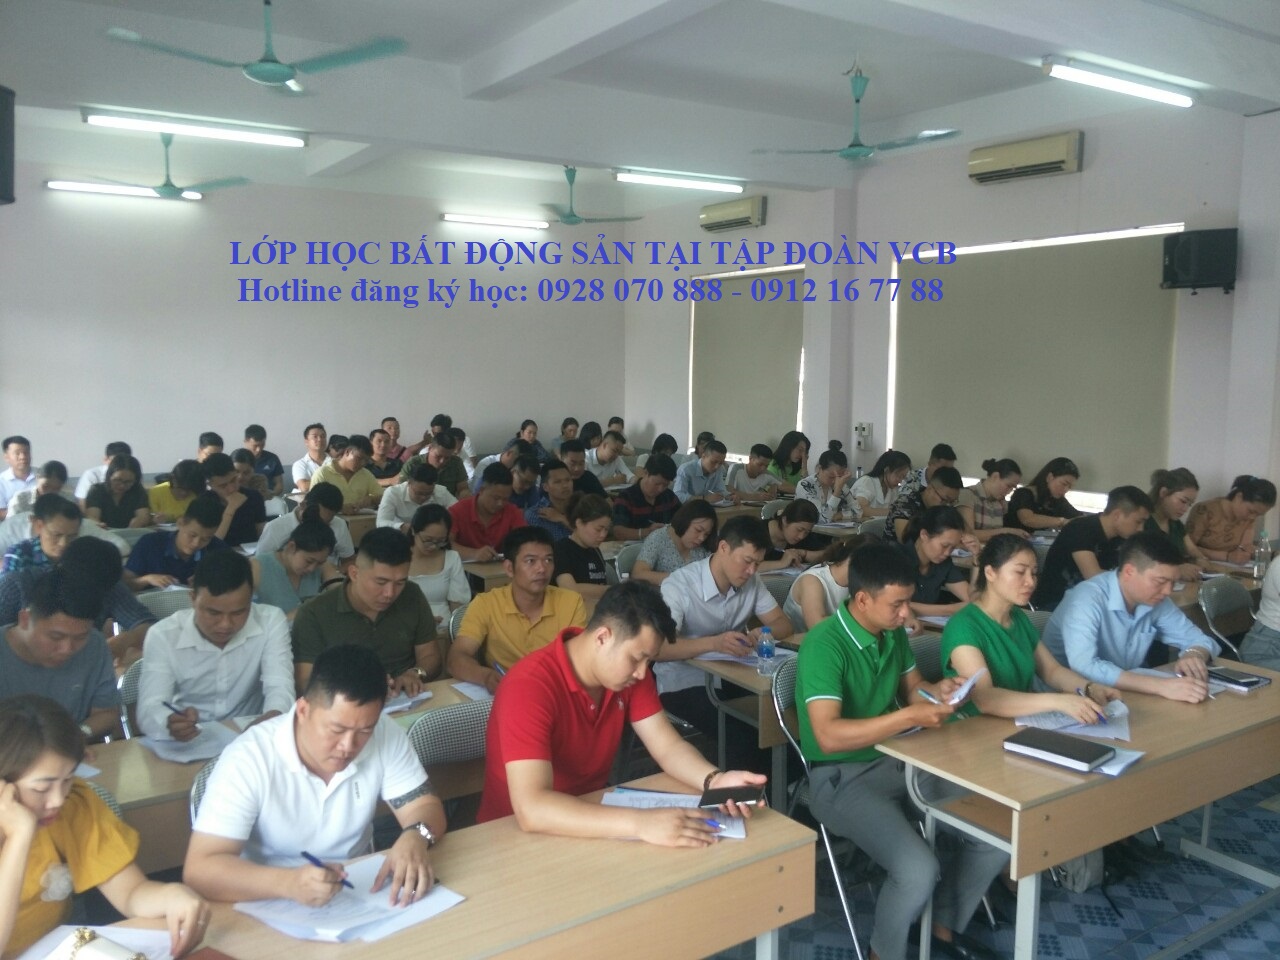 Hoc Bat Dong San Tai Ha Noi 0912167788 0928070888 Lớp Học Chứng Chỉ Môi Giới Bđs Tại Hải Dương 2020